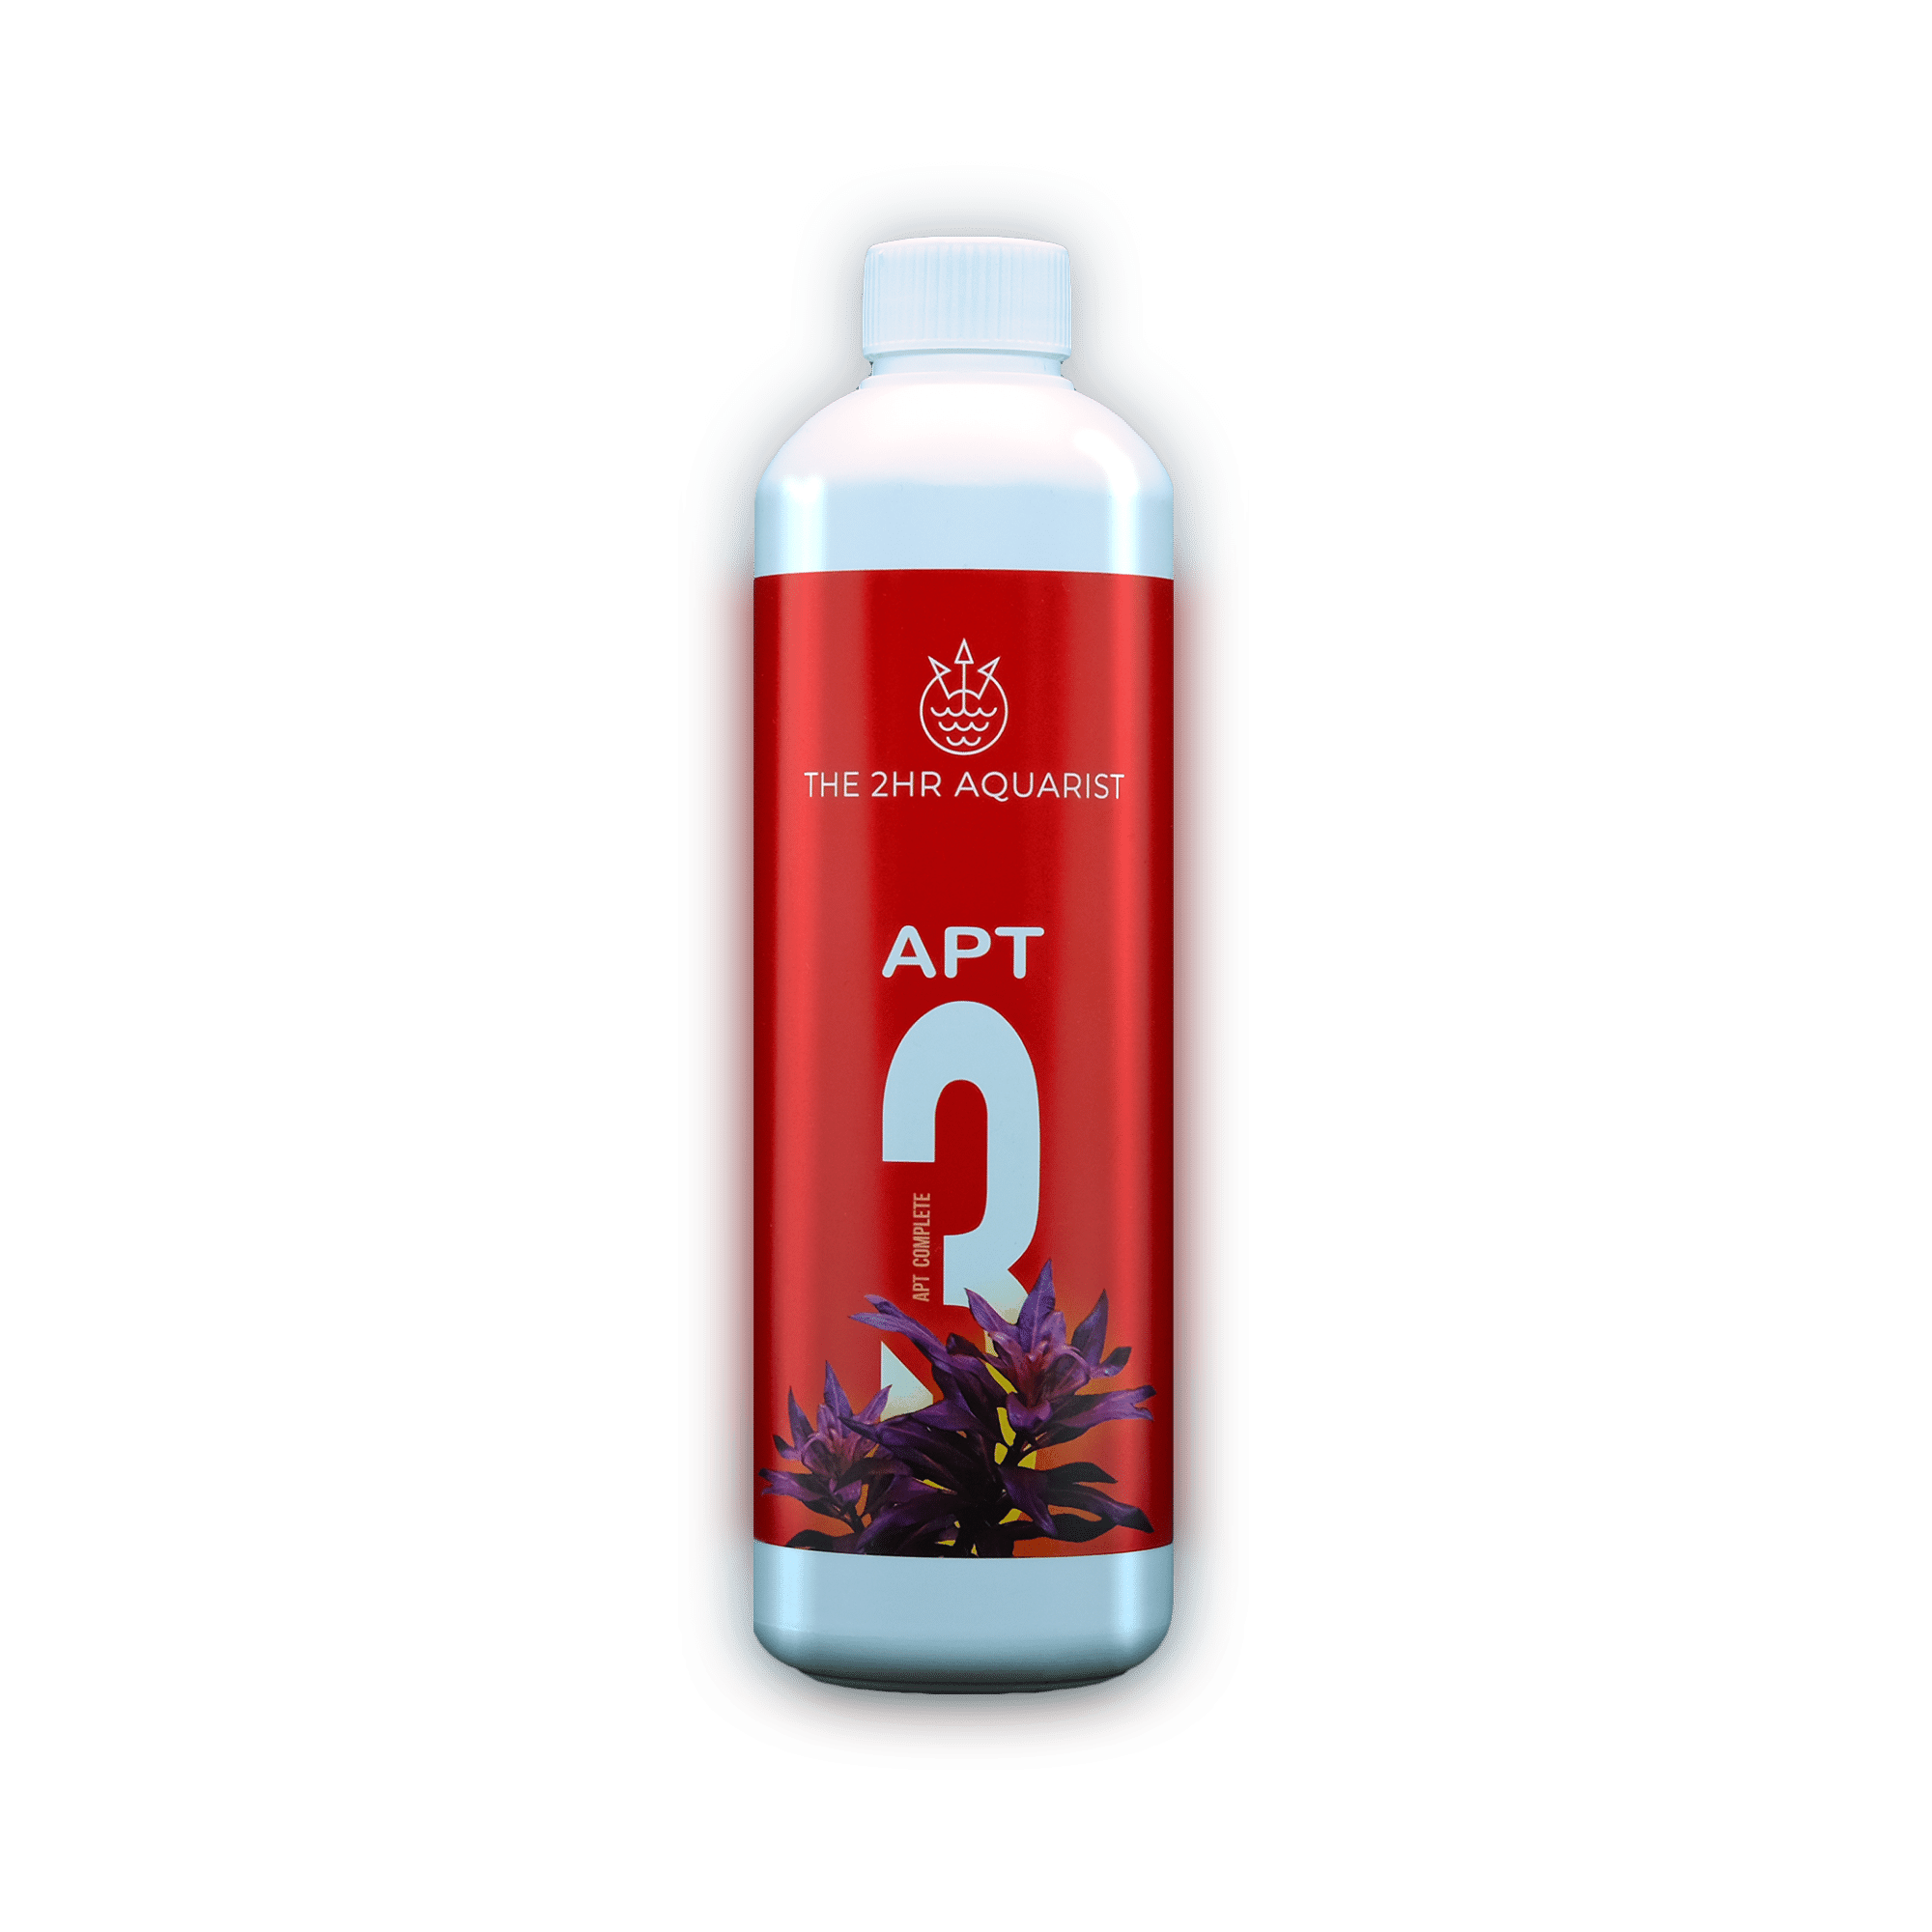 The 2Hr Aquarist APT 3 Complete